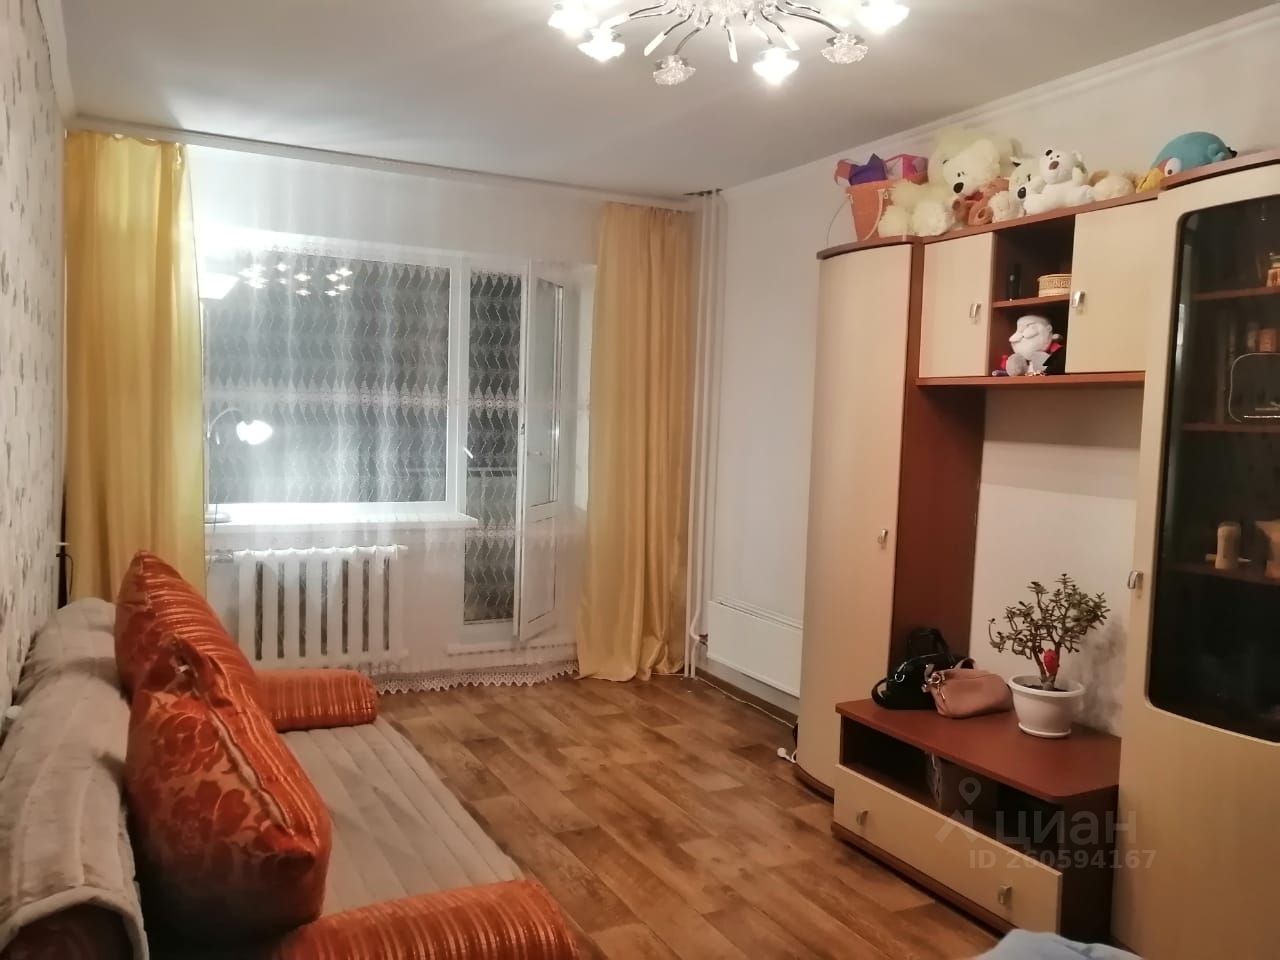 Купить квартиру в Шарыпово